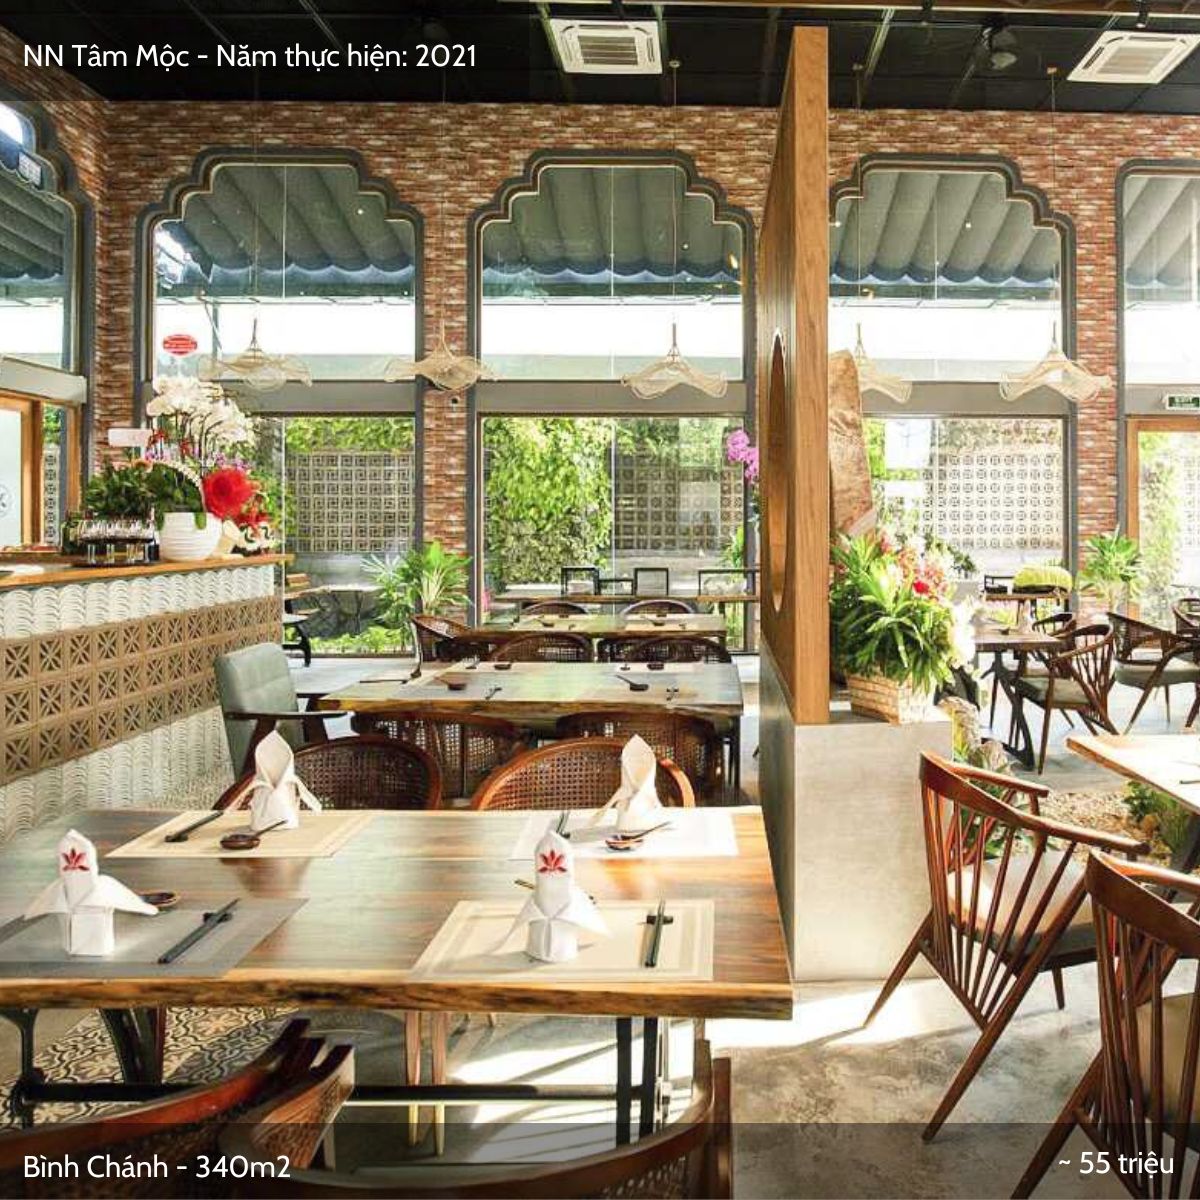 Tân Hùng Mạnh - Dự án nhà hàng chay Tâm Mộc